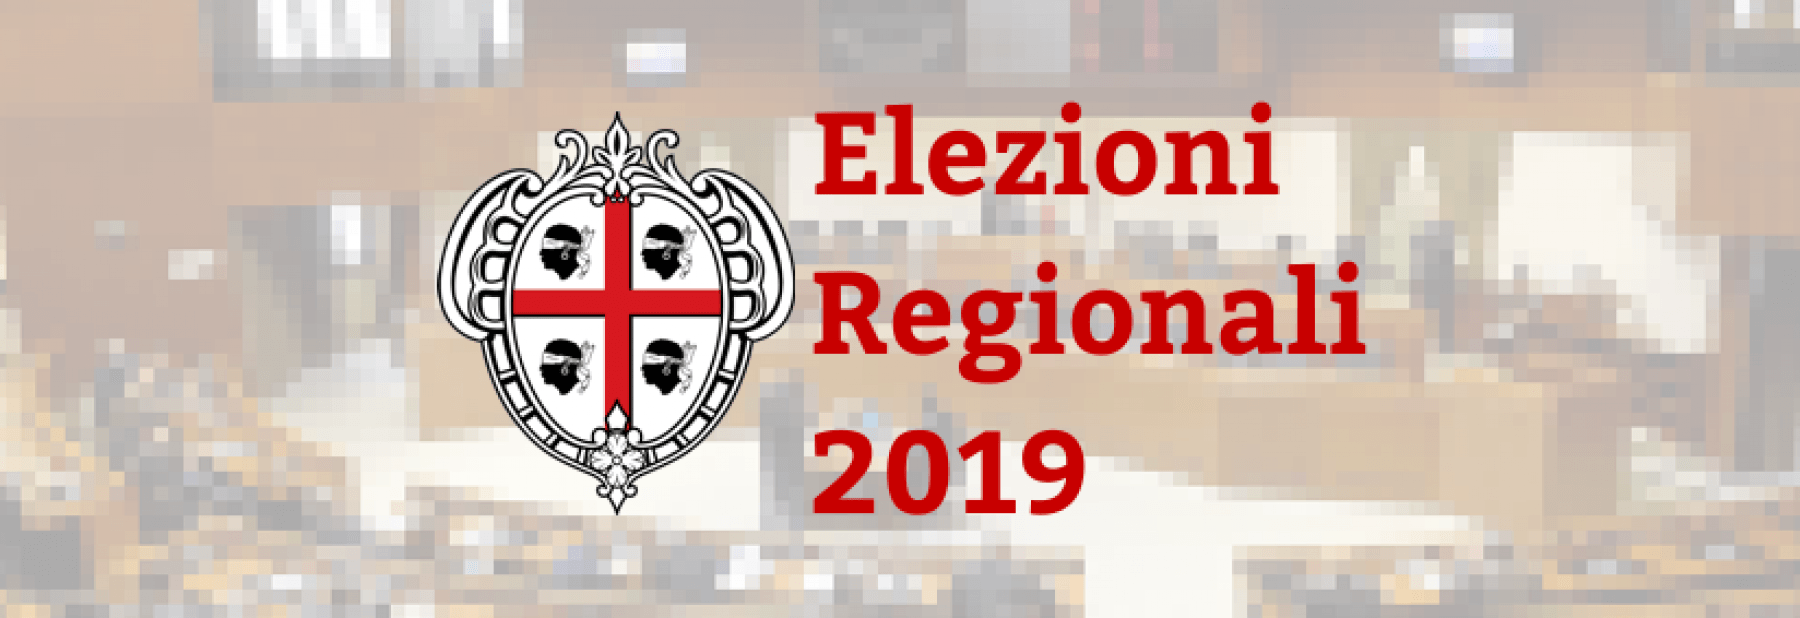 elezioni regionali 2019 sardegna